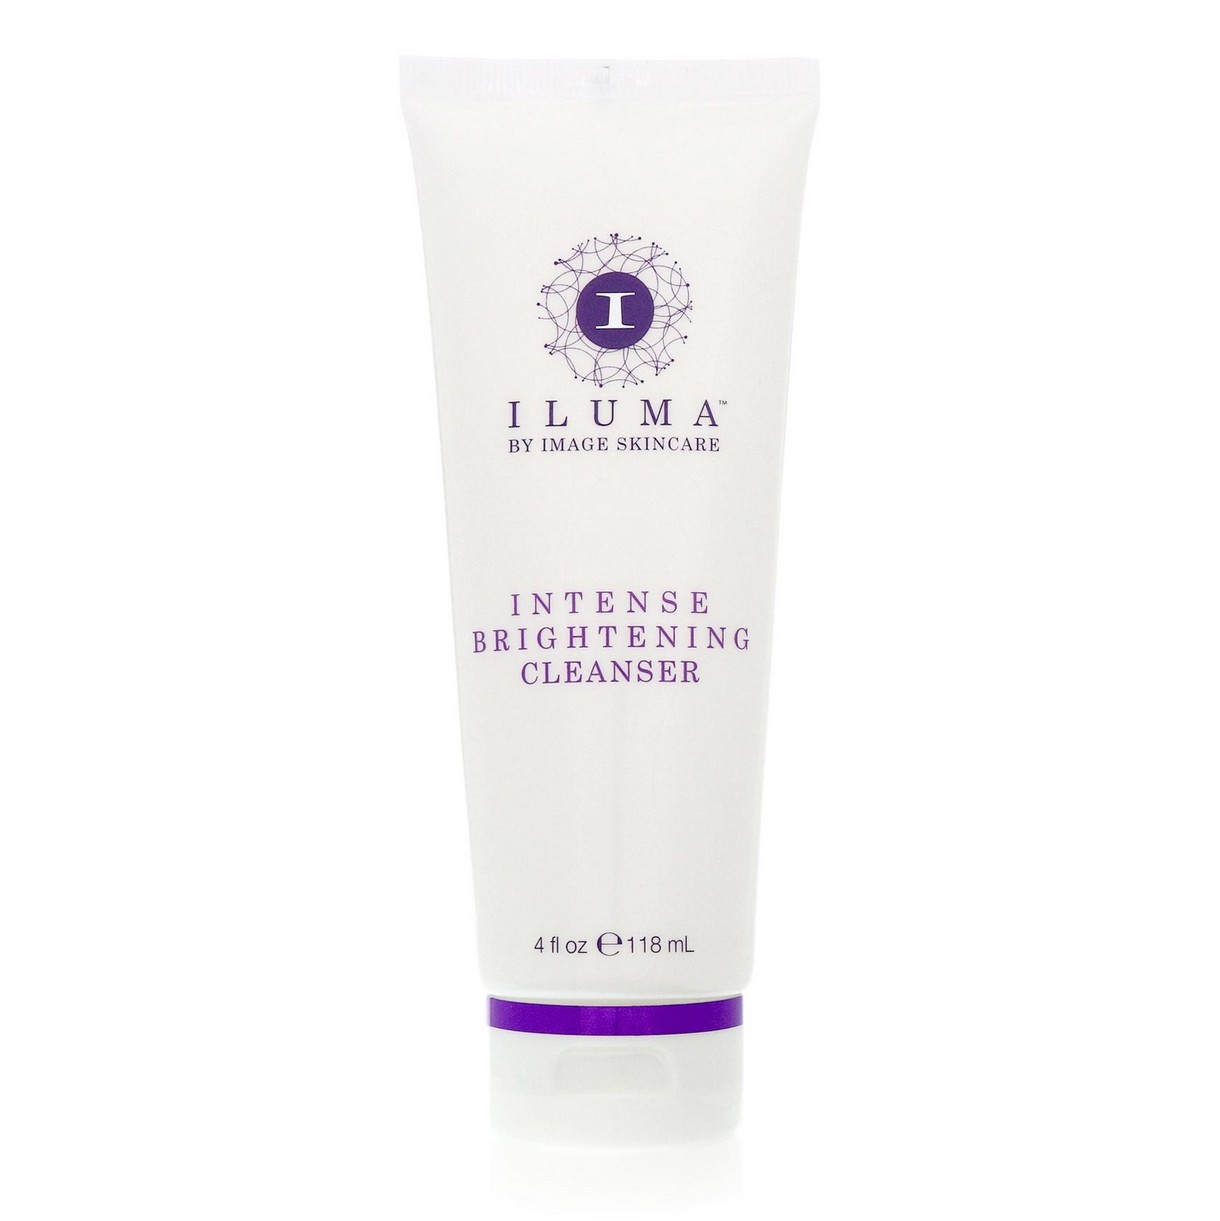 Iluma крем для лица. Image Skincare товары. Iluma™ intense Brightening Exfoliating Cleanser. Iluma имидж. Brightening cleanser